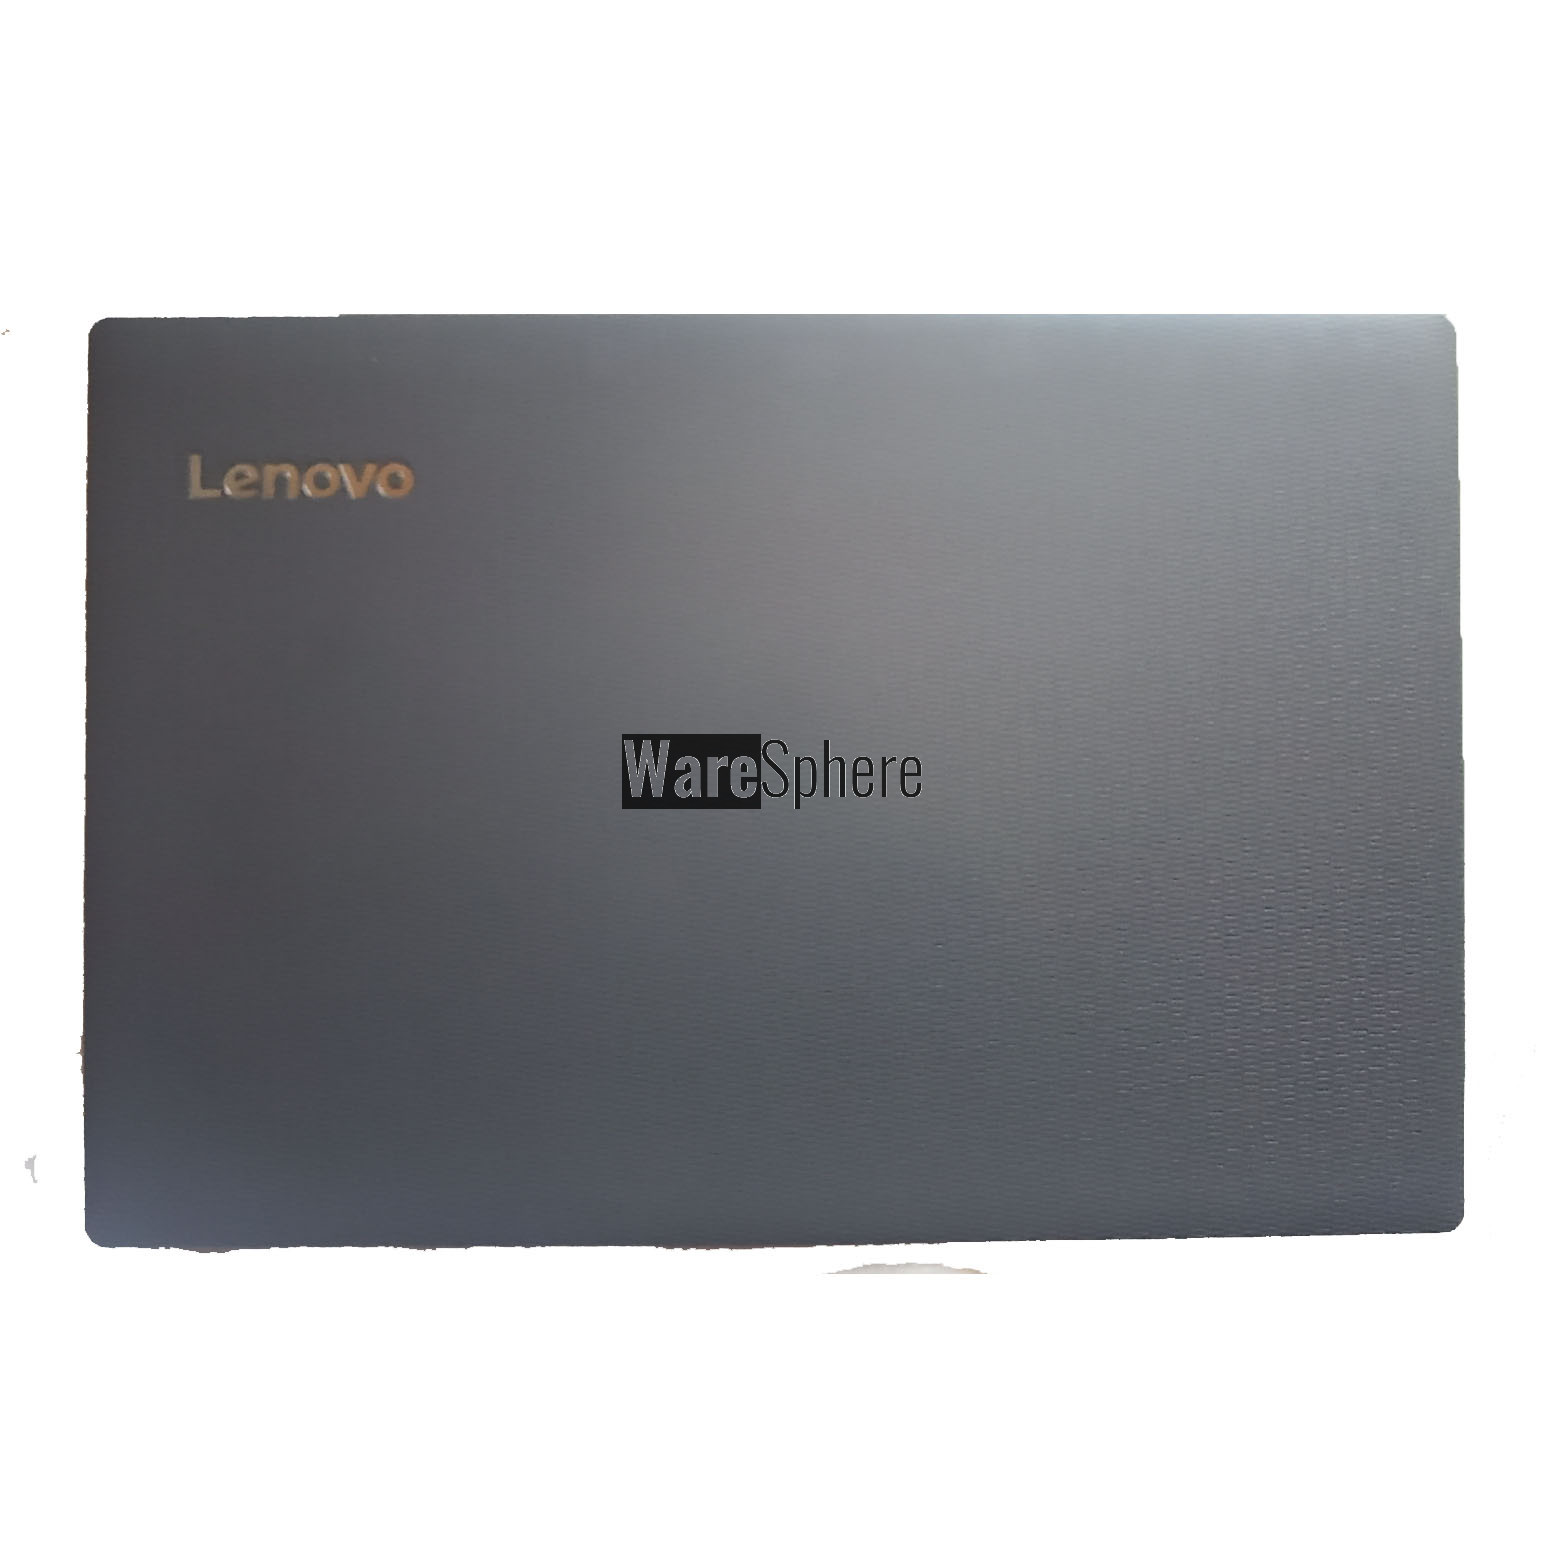 LCD Back Cover  for Lenovo V130-15 V330-15  4600DB2O0001 Black  White Logo